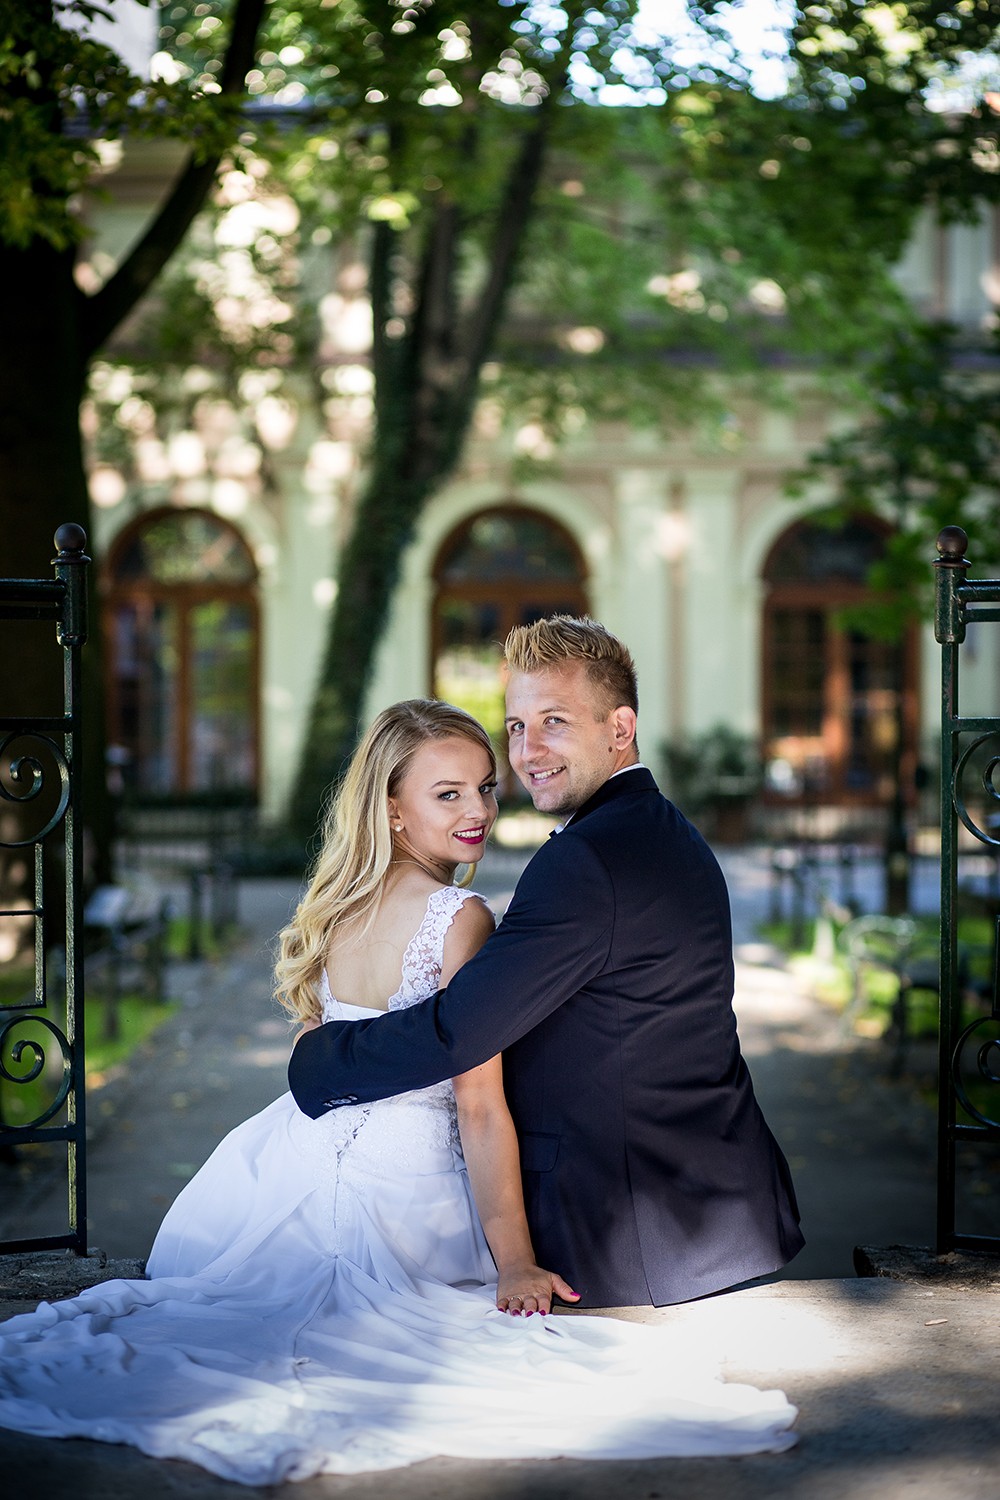 fotograf krakow szymon-blaszczyk-fotoszpl portfolio zdjecia slubne inspiracje wesele plener slubny sesja slubna